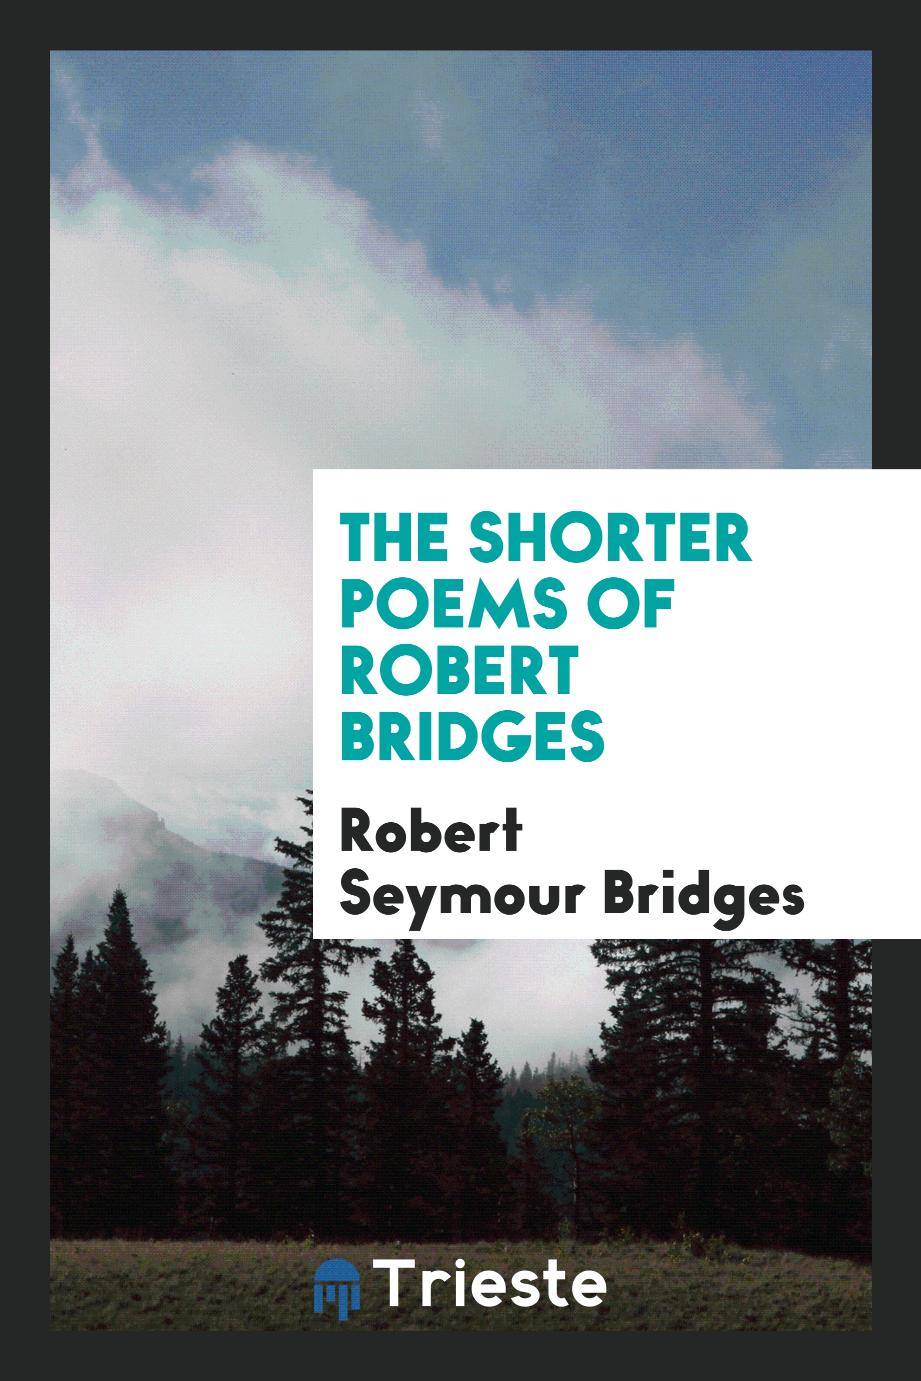 The shorter poems of Robert Bridges